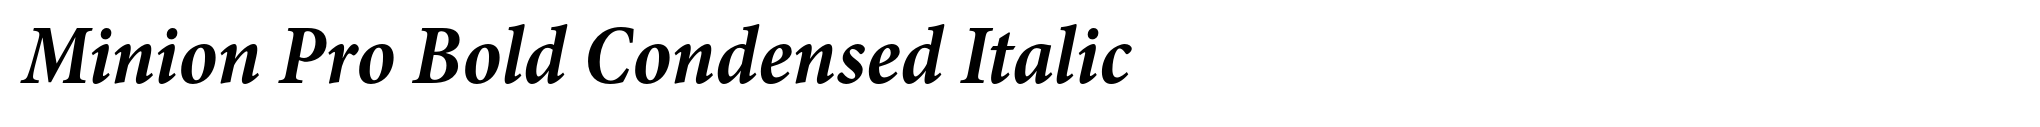 Minion Pro Bold Condensed Italic image